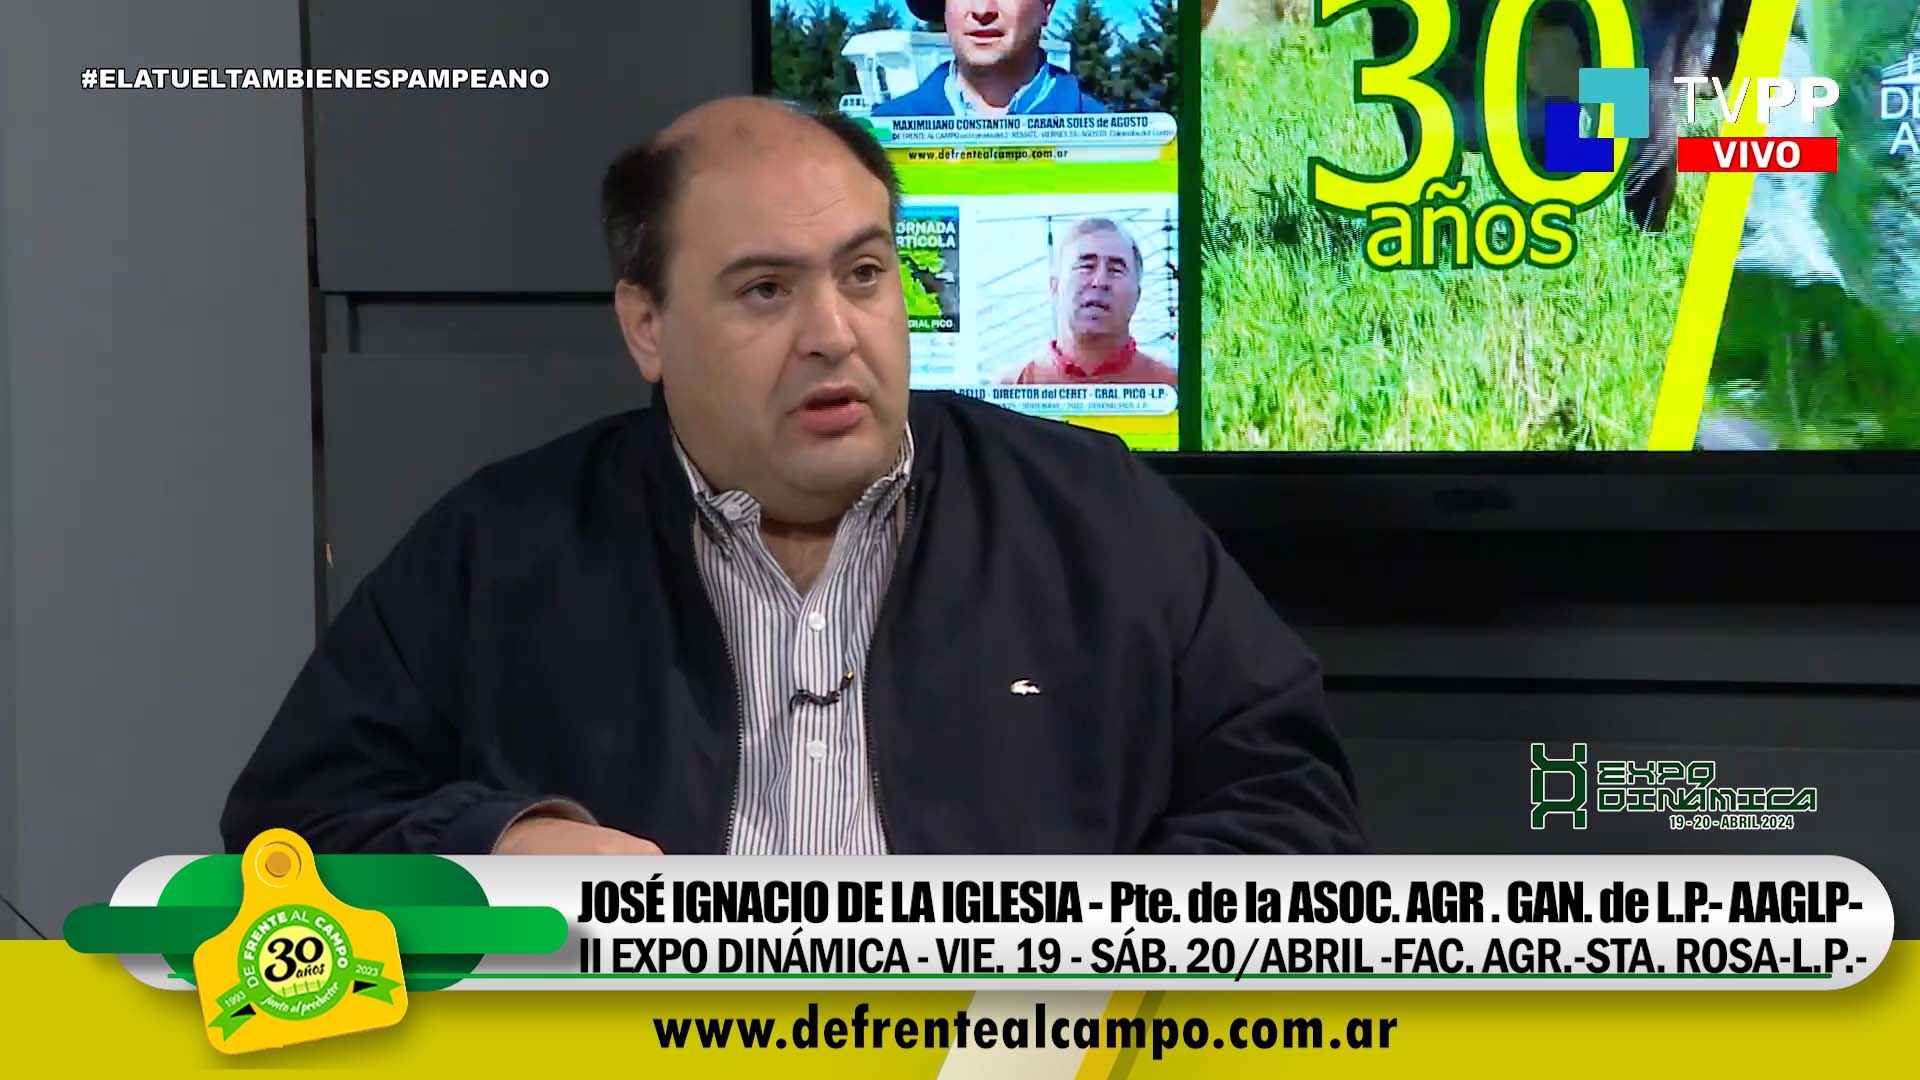 Entrevista: José Ignacio de La Iglesia -Pte. de la Agrícola –